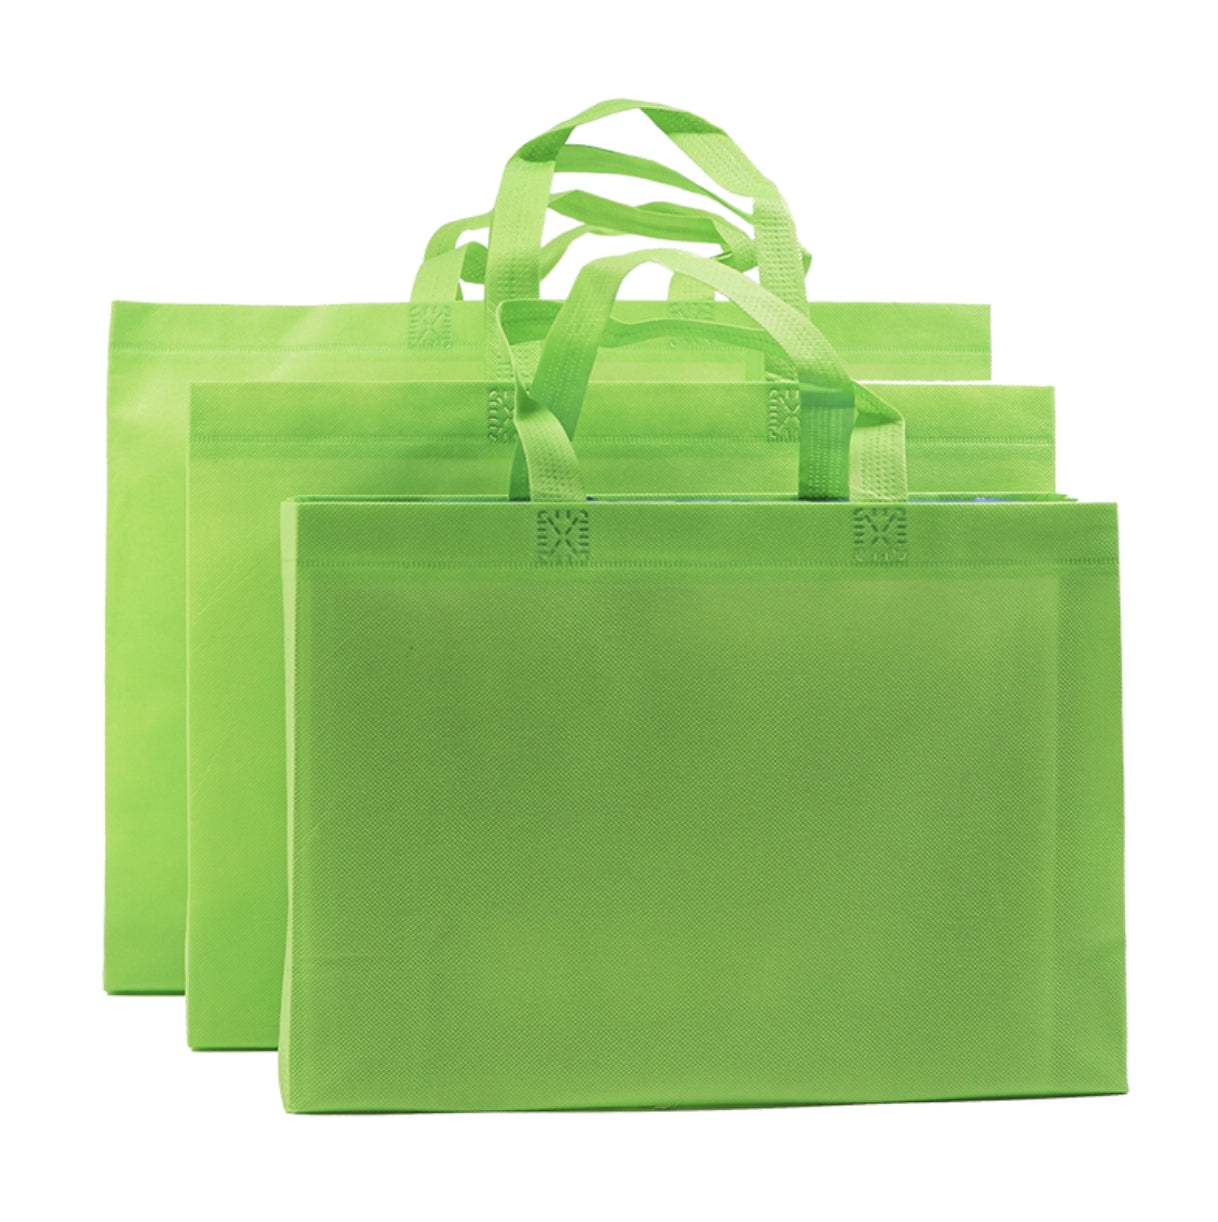 【客製化】環保不織布購物袋(有底有側款) | 禮品、贈品專業客製禮贈品顧問 | 禮品、贈品專屬客製禮贈品專家